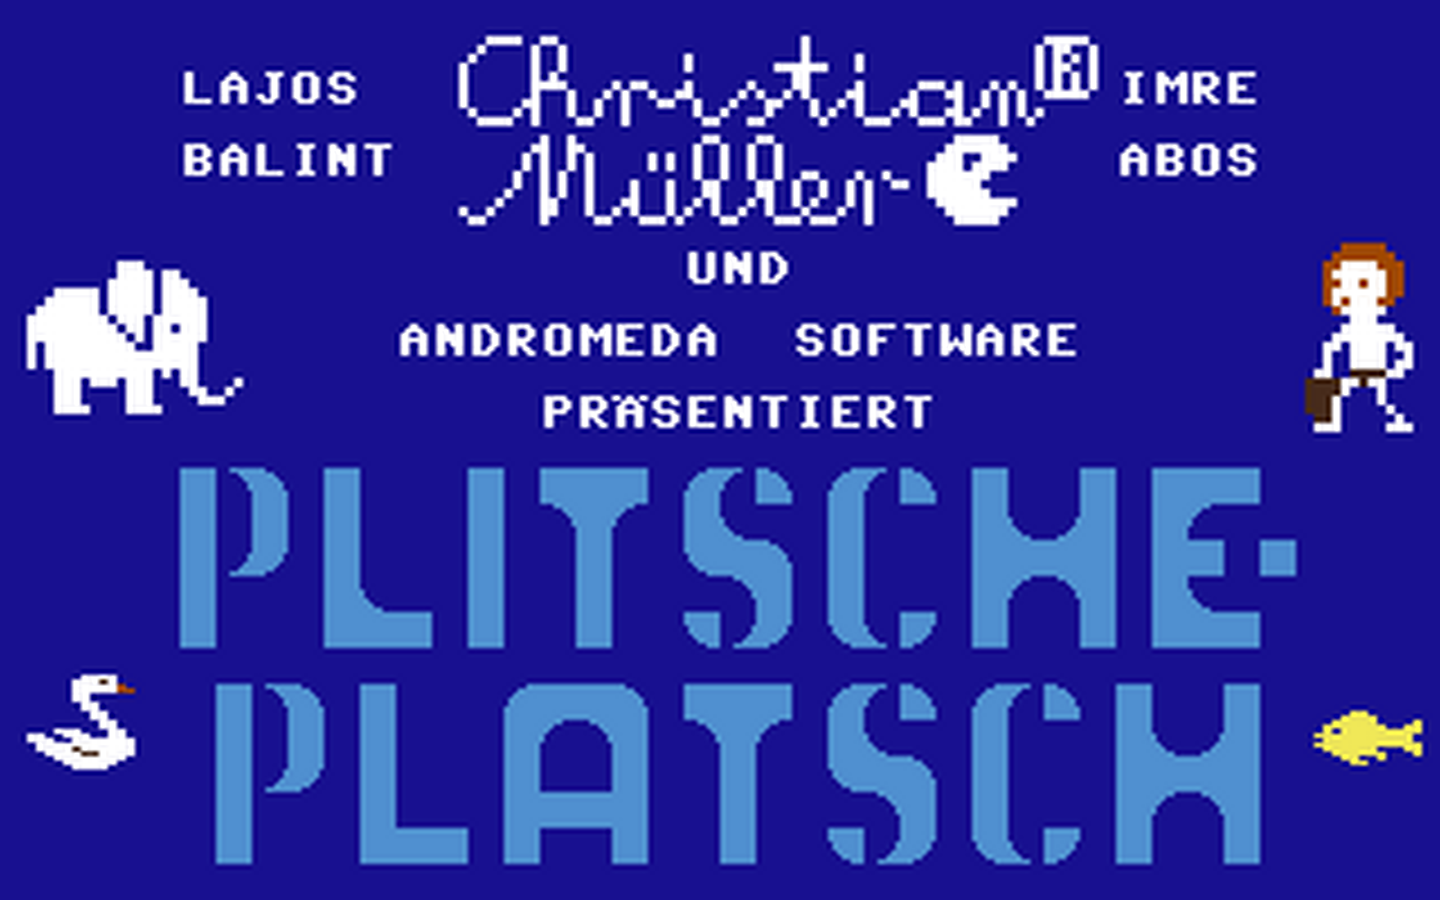 C64 GameBase Plitsche-Platsch Happy_Software_[Markt_&_Technik] 1984